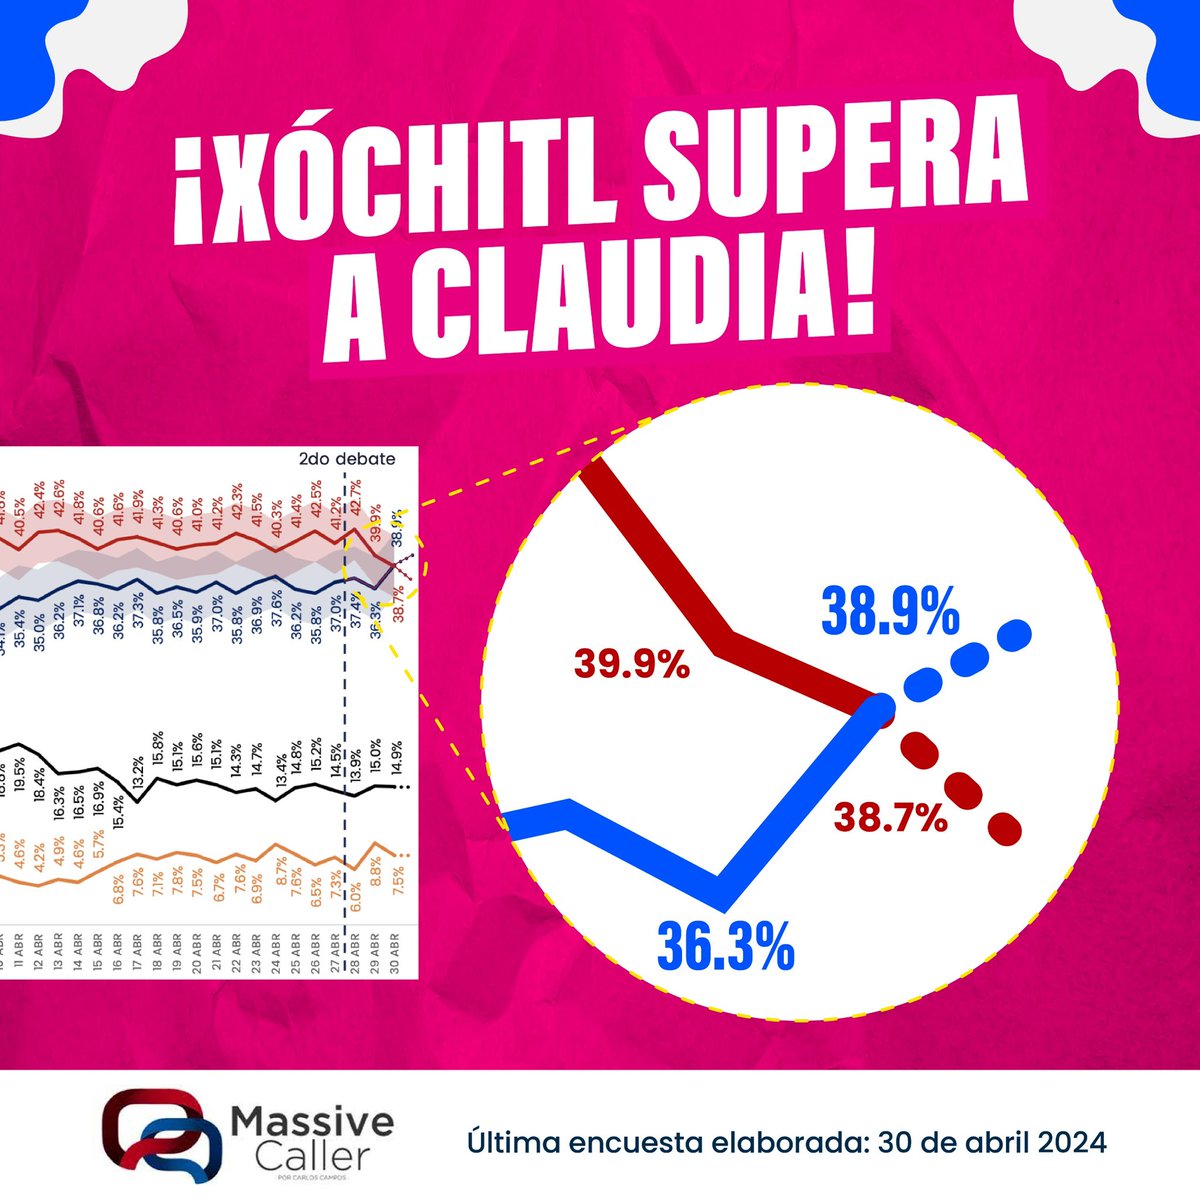 En el cuarto de guerra de la campaña de Morena encendieron las alarmas 🚨 porque @XochitlGalvez comienza a superar a @Claudiashein en la encuesta más atinada de los últimos procesos. 📈💙

¡MÉXICO DESPERTÓ Y VOTARÁ MASIVAMENTE POR EL CAMBIO! 🇲🇽✨

#XóchitlPresidenta #Xóchitl2024…